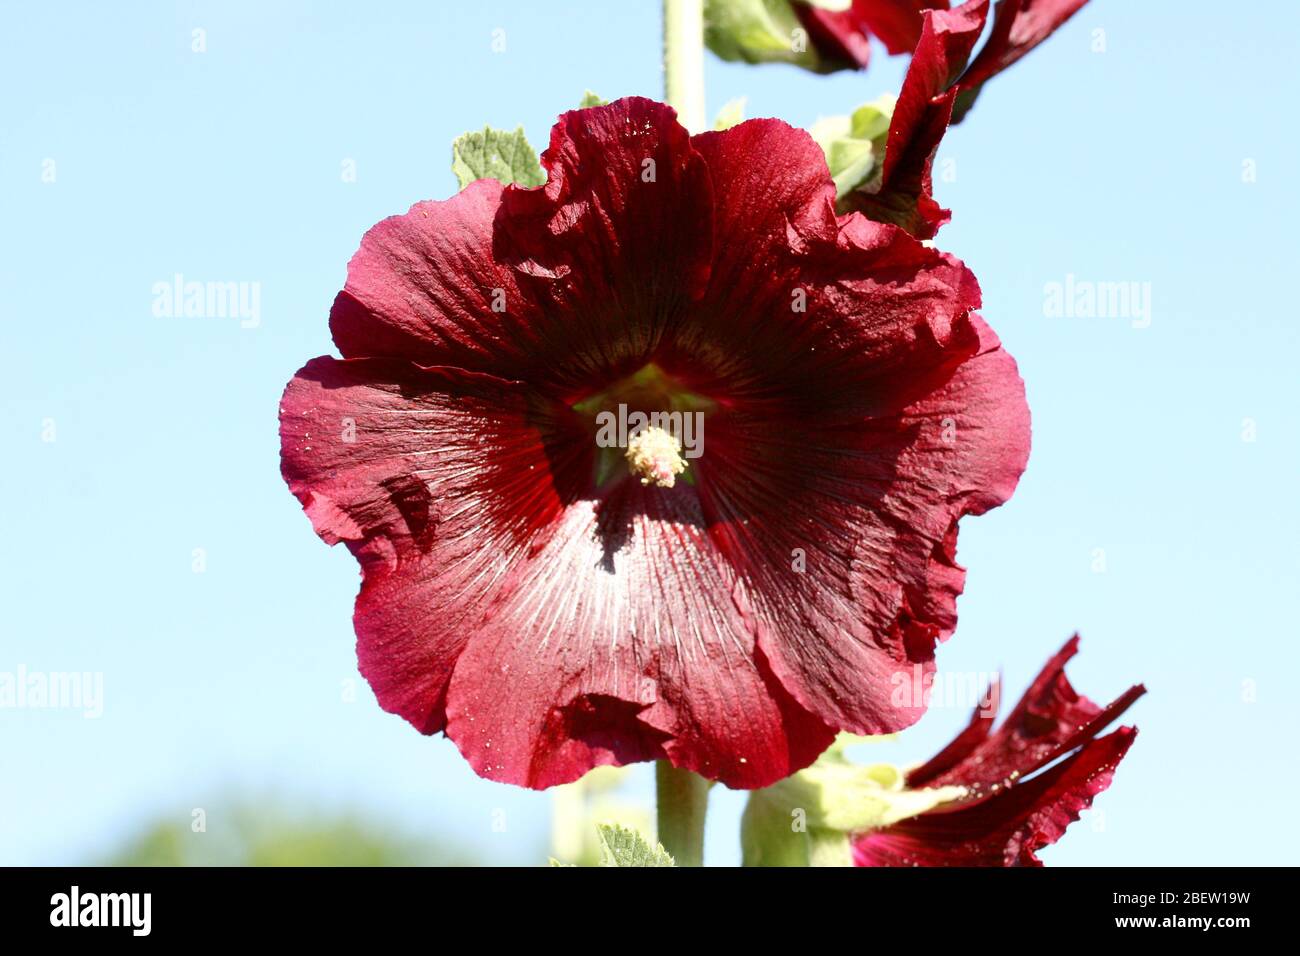 Un bellissimo hollyhock rosso fiorito (Alcea rosea) Eine schöne rot blühende Stockrose (Alcea rosea) Foto Stock